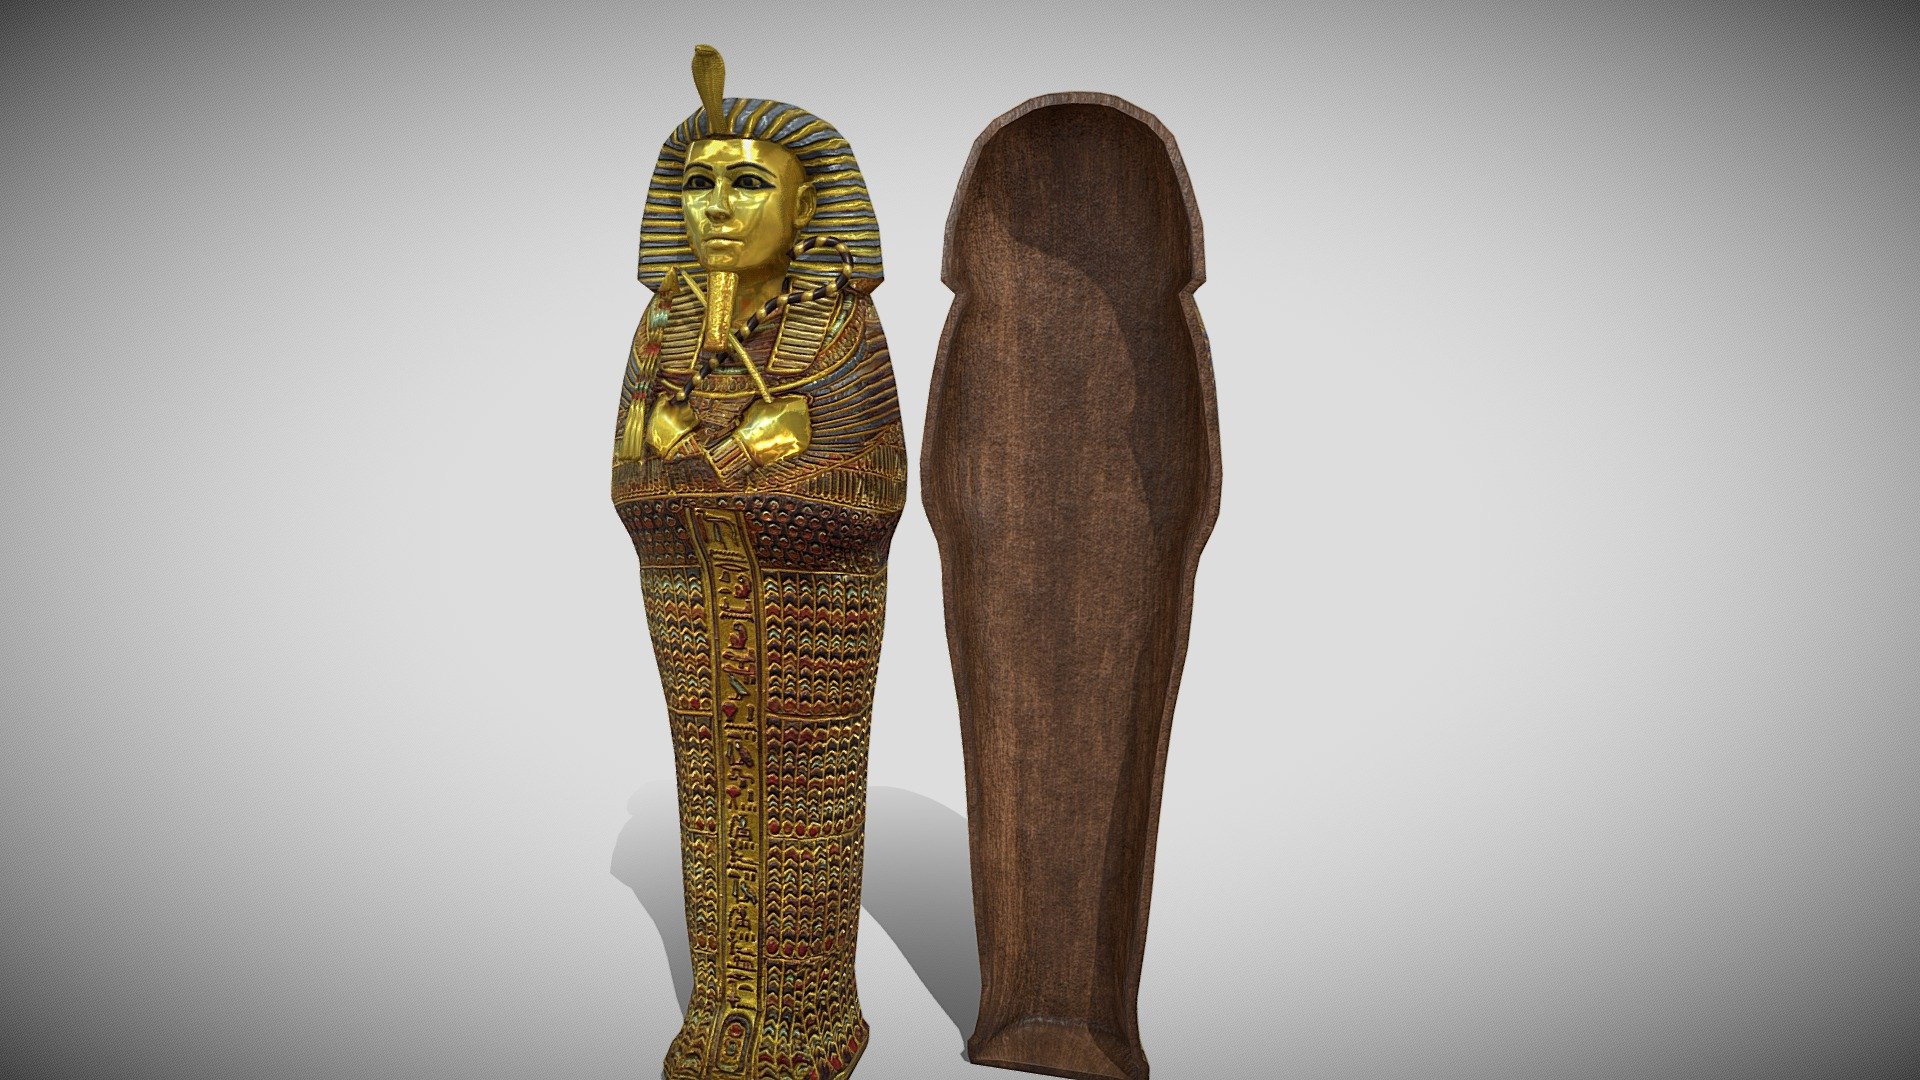 3D model of an Egyptian coffin or sarcaphagus 3d model